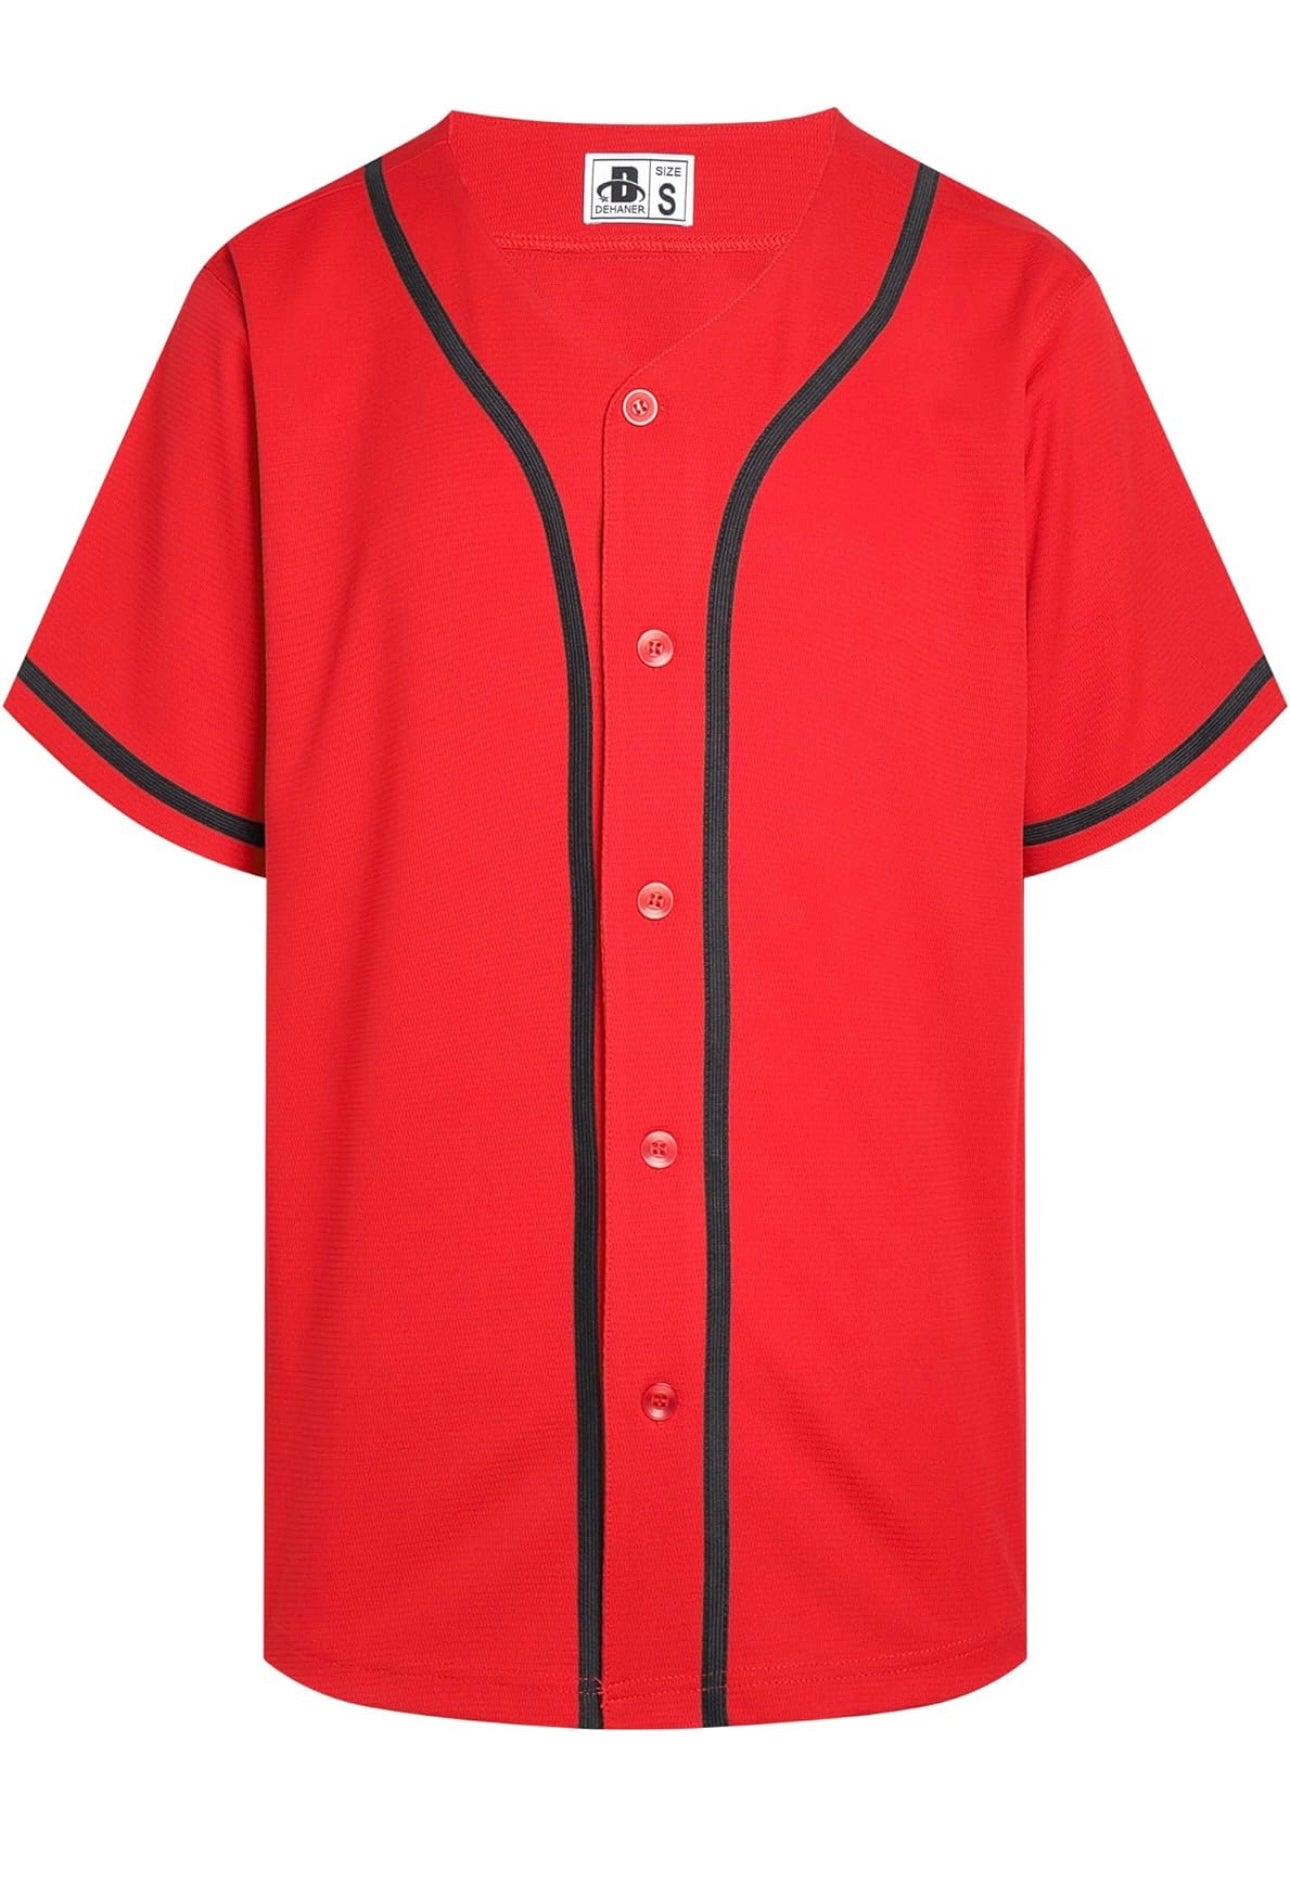 Personalized Baseball Jersey